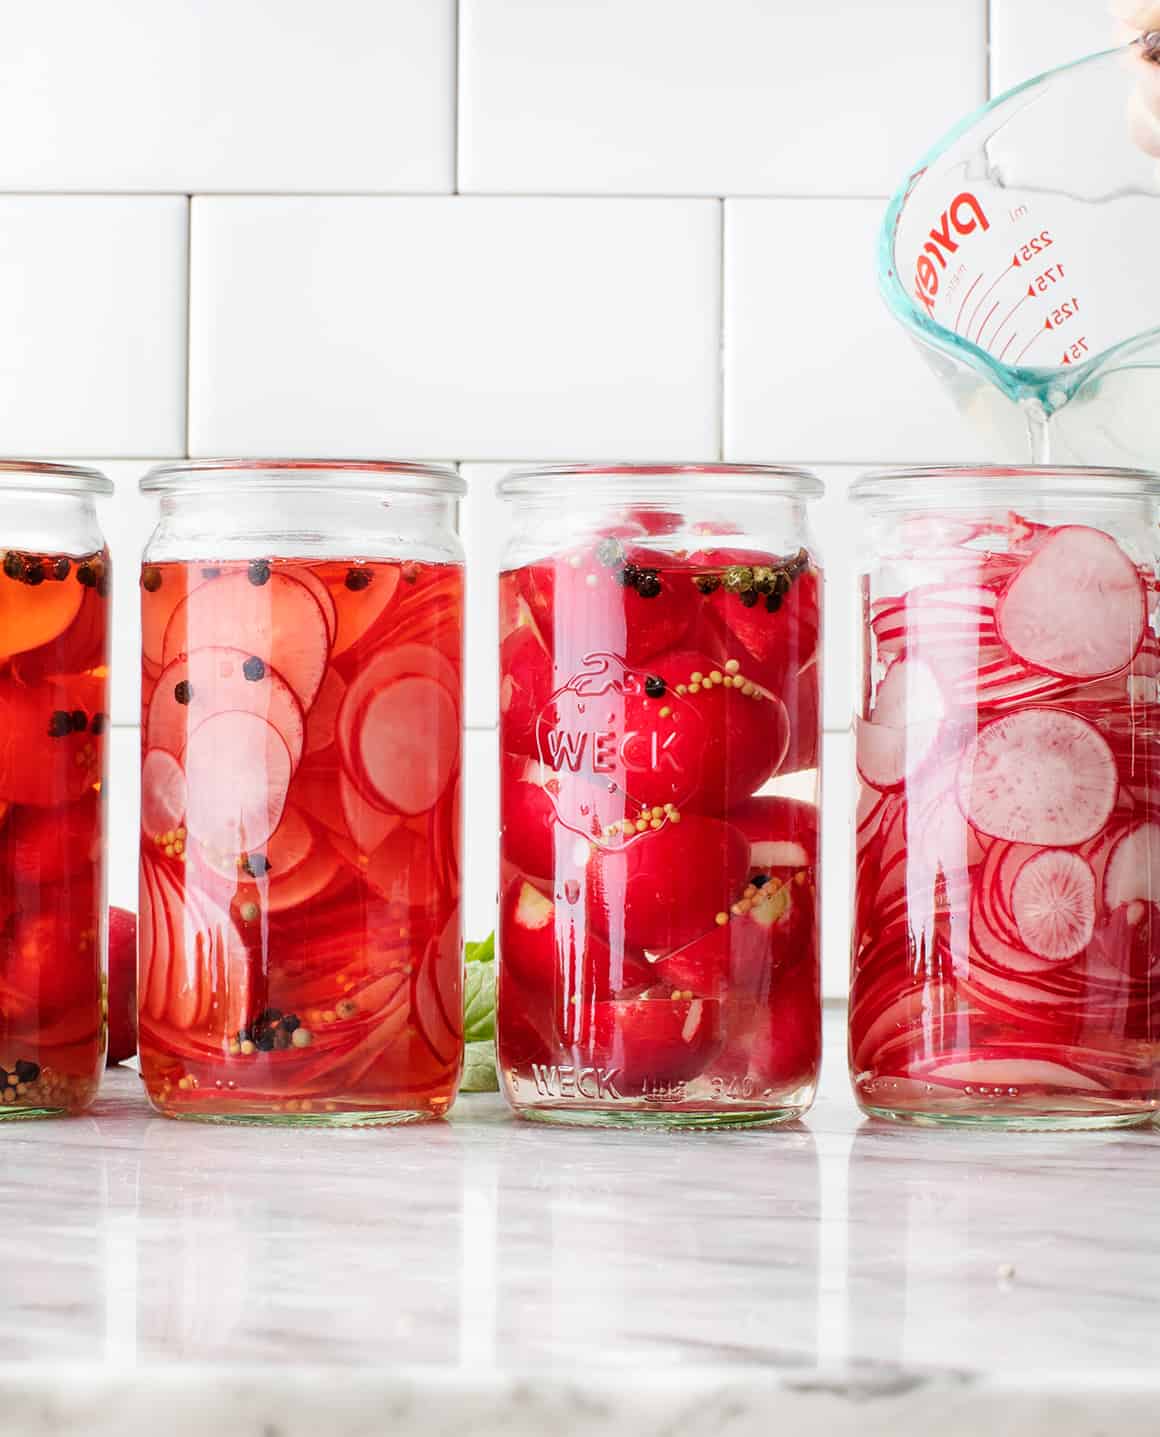 4 Pickled radish jars